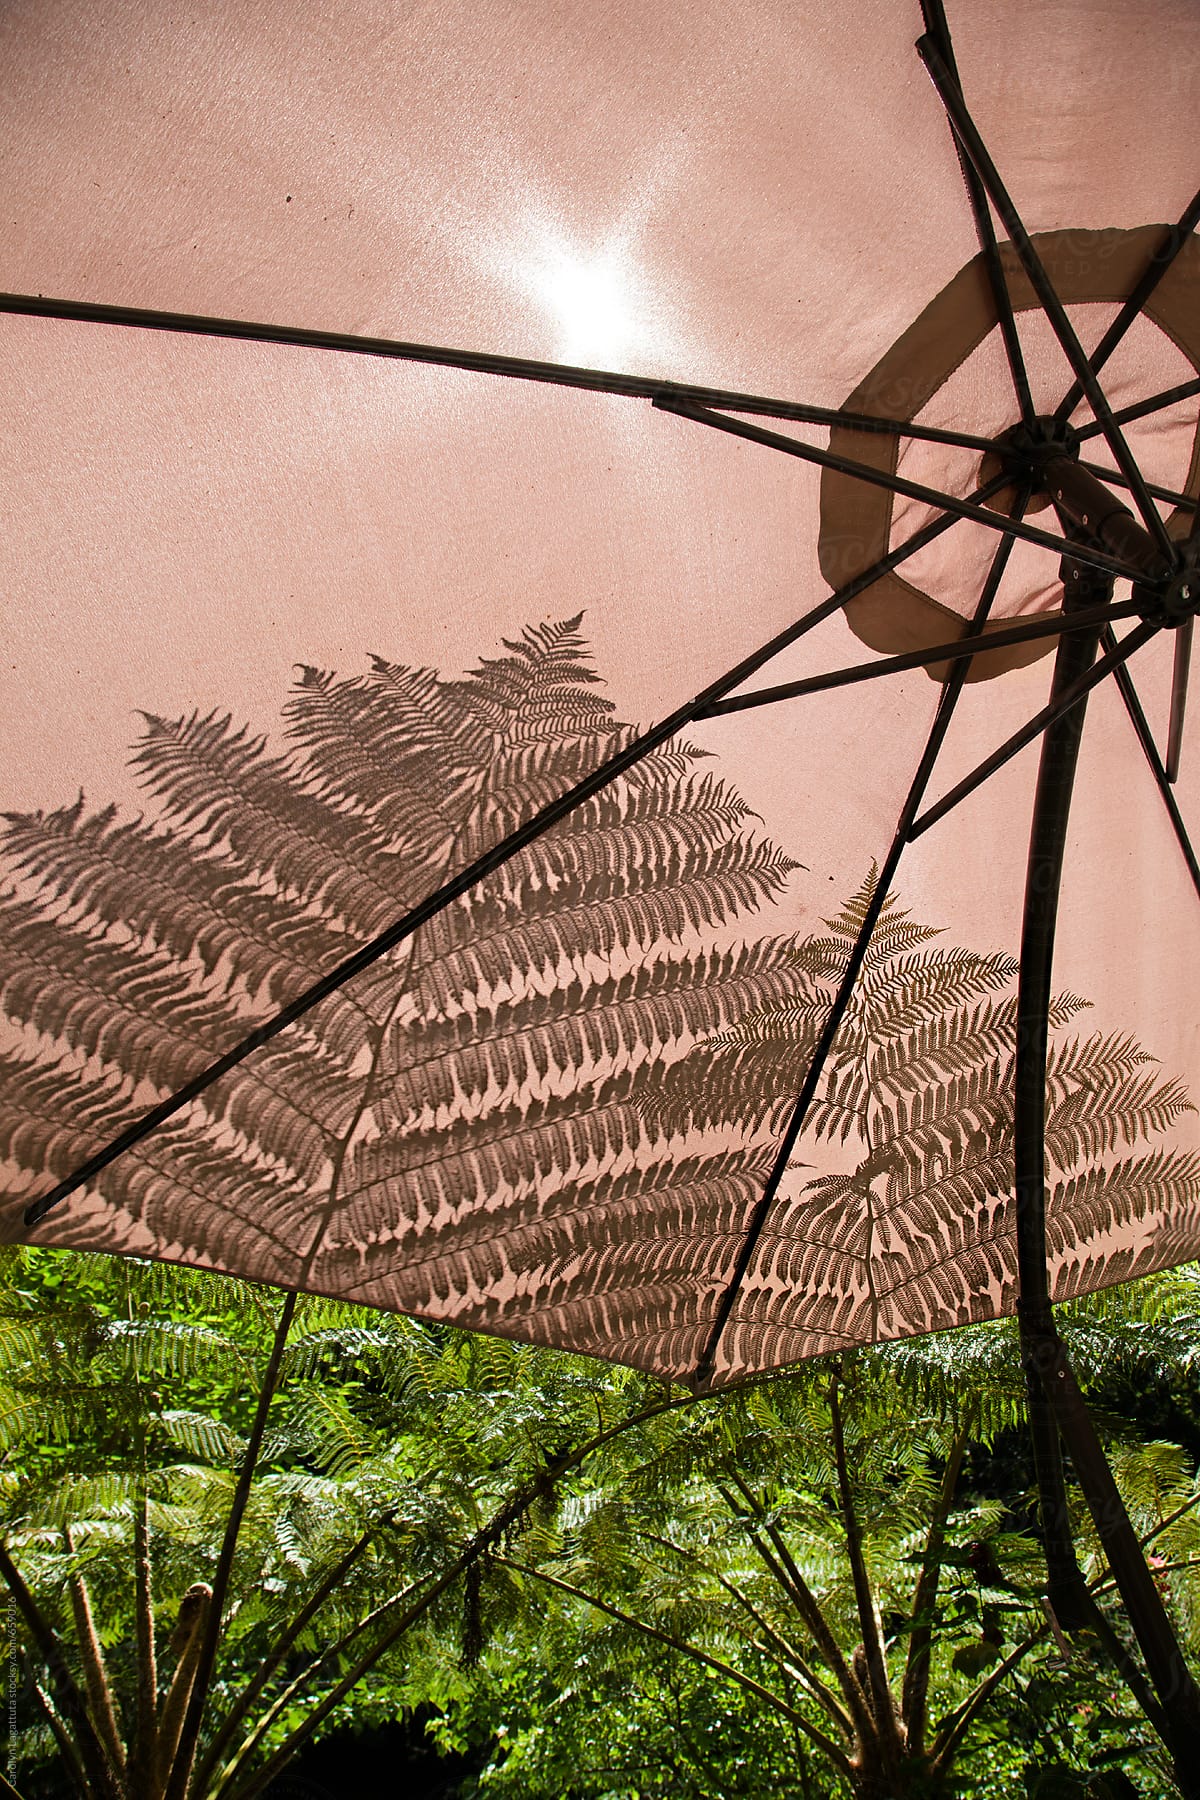 Umbrella with a fern shadow